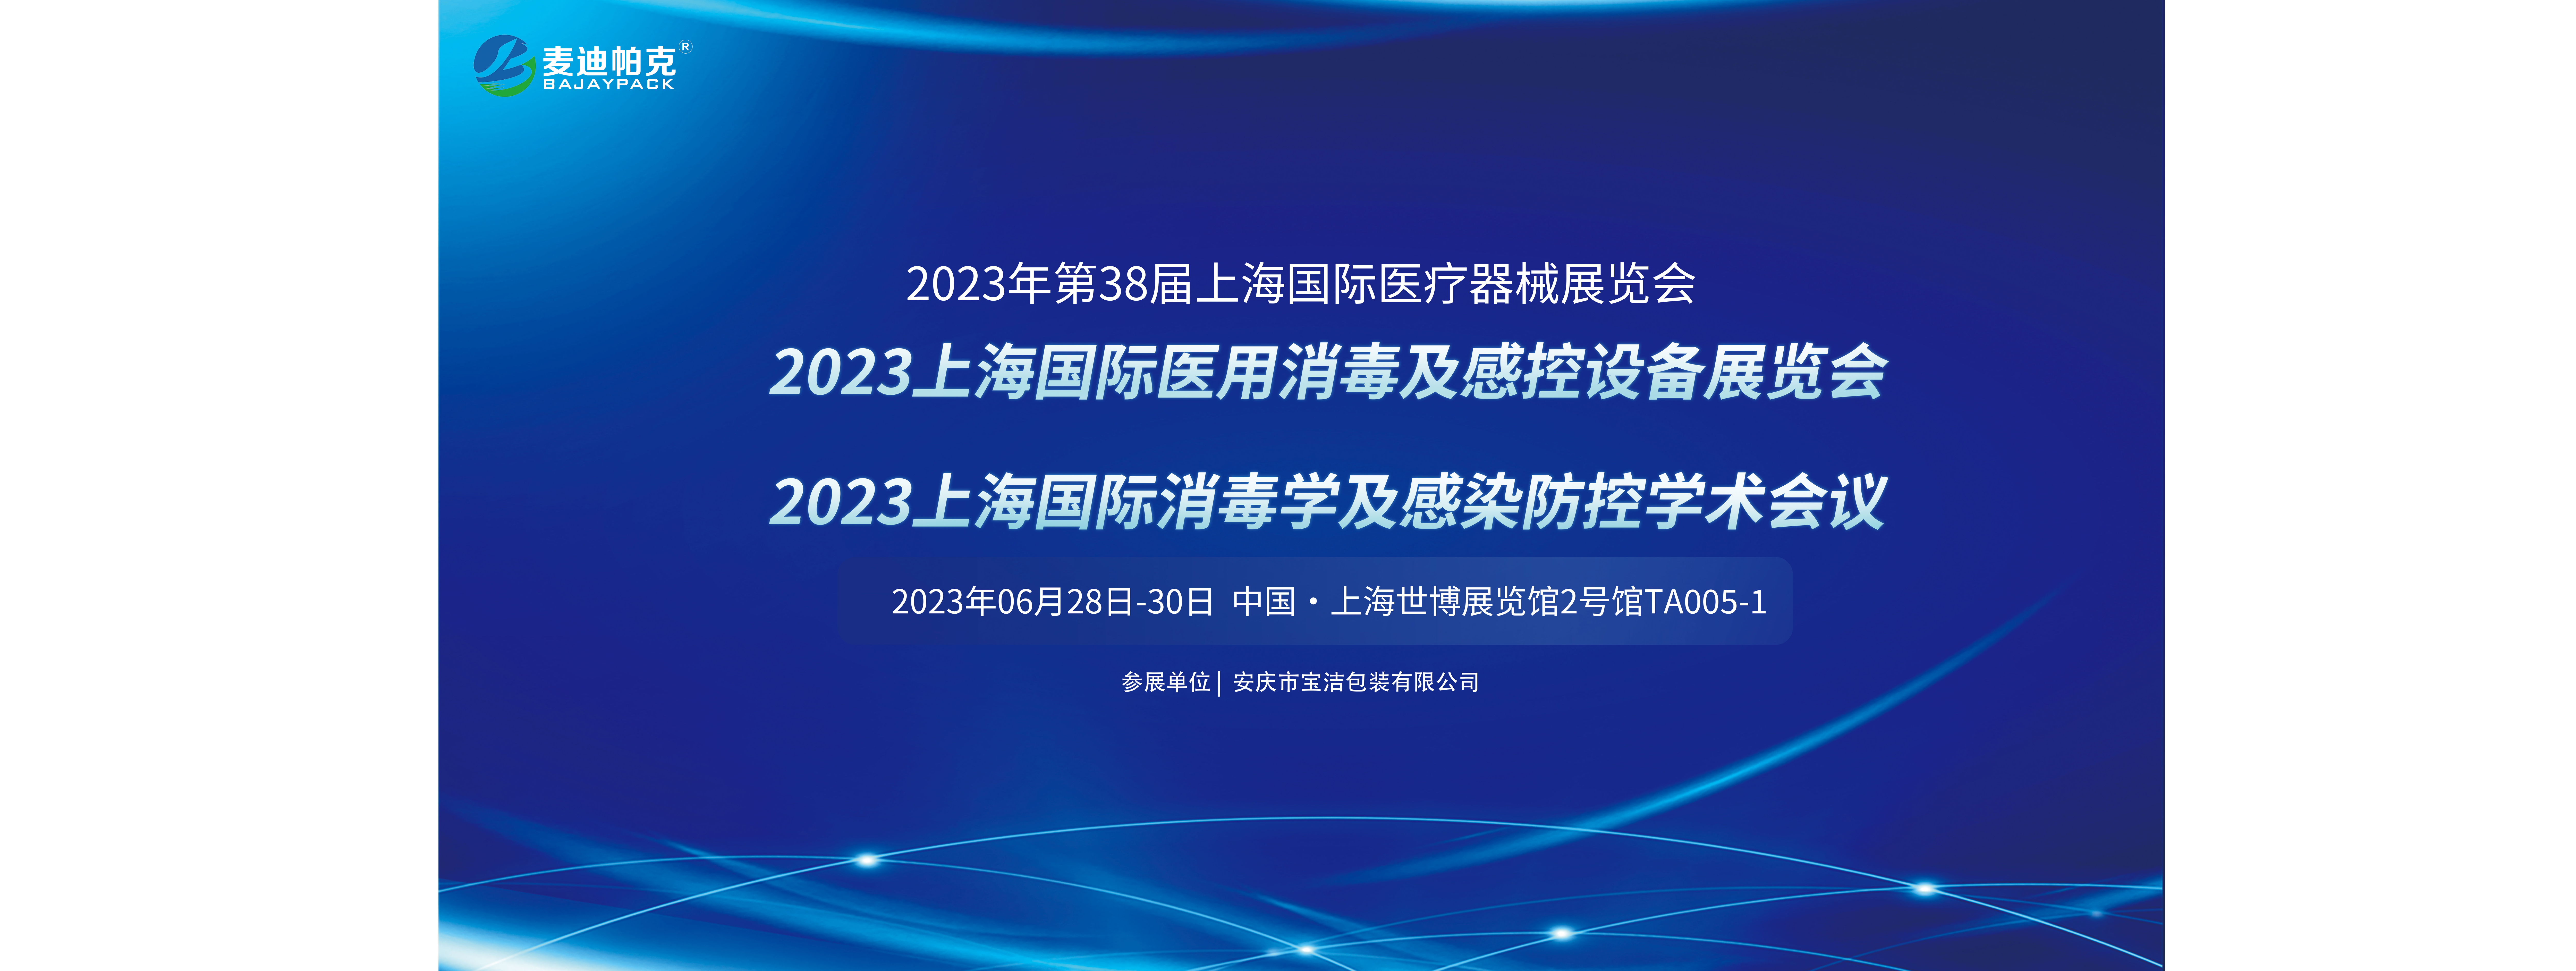 麥迪帕克丨展會邀請 2023上海國際醫用消毒與感控設備展覽會2號館TA005-1